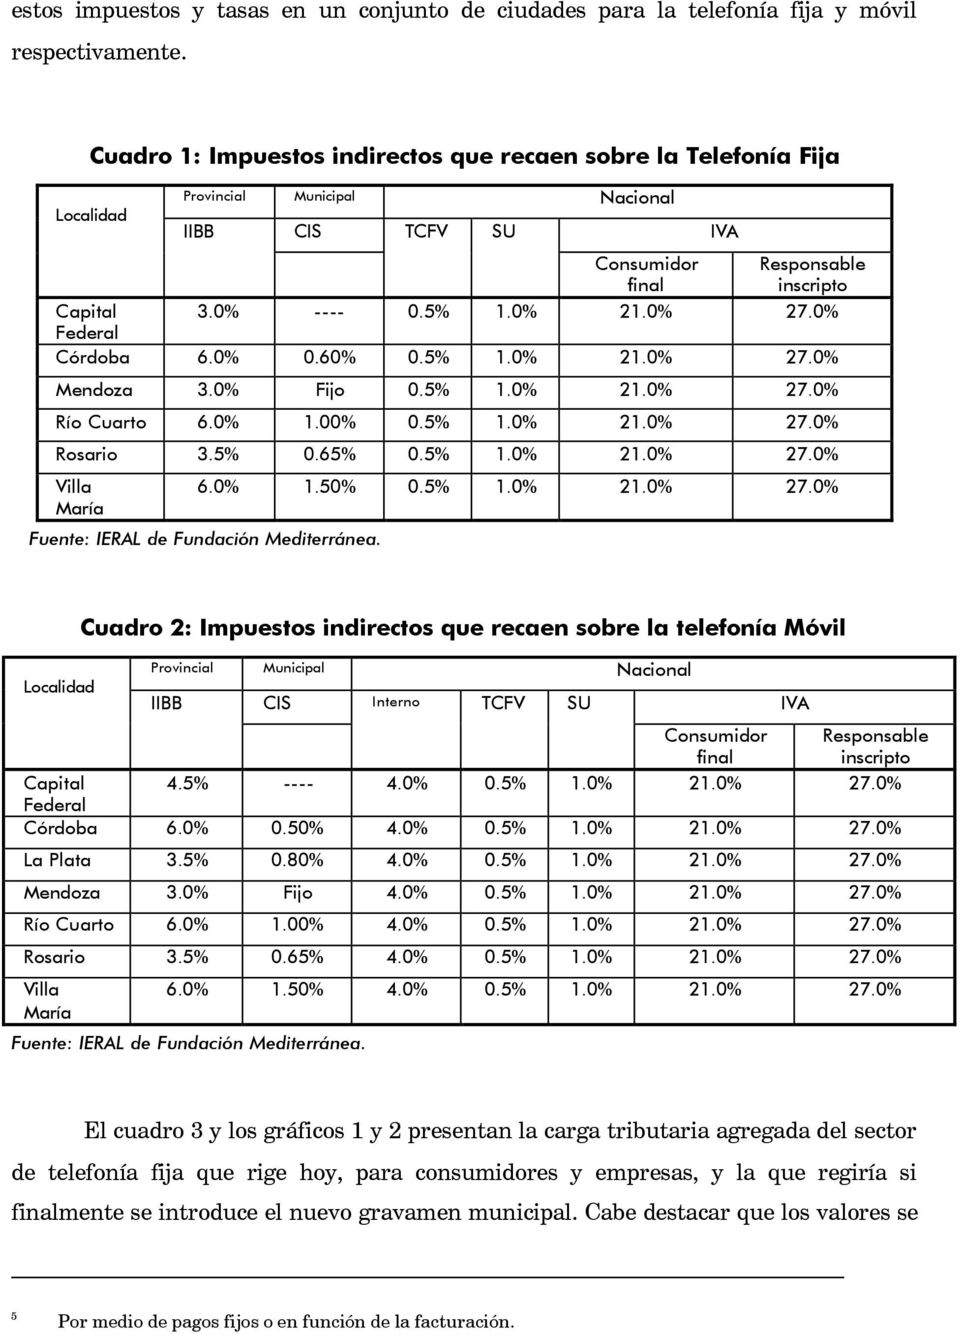 0% 27.0% Federal Córdoba 6.0% 0.60% 0.5% 1.0% 21.0% 27.0% Mendoza 3.0% Fijo 0.5% 1.0% 21.0% 27.0% Río Cuarto 6.0% 1.00% 0.5% 1.0% 21.0% 27.0% Rosario 3.5% 0.65% 0.5% 1.0% 21.0% 27.0% Villa María 6.